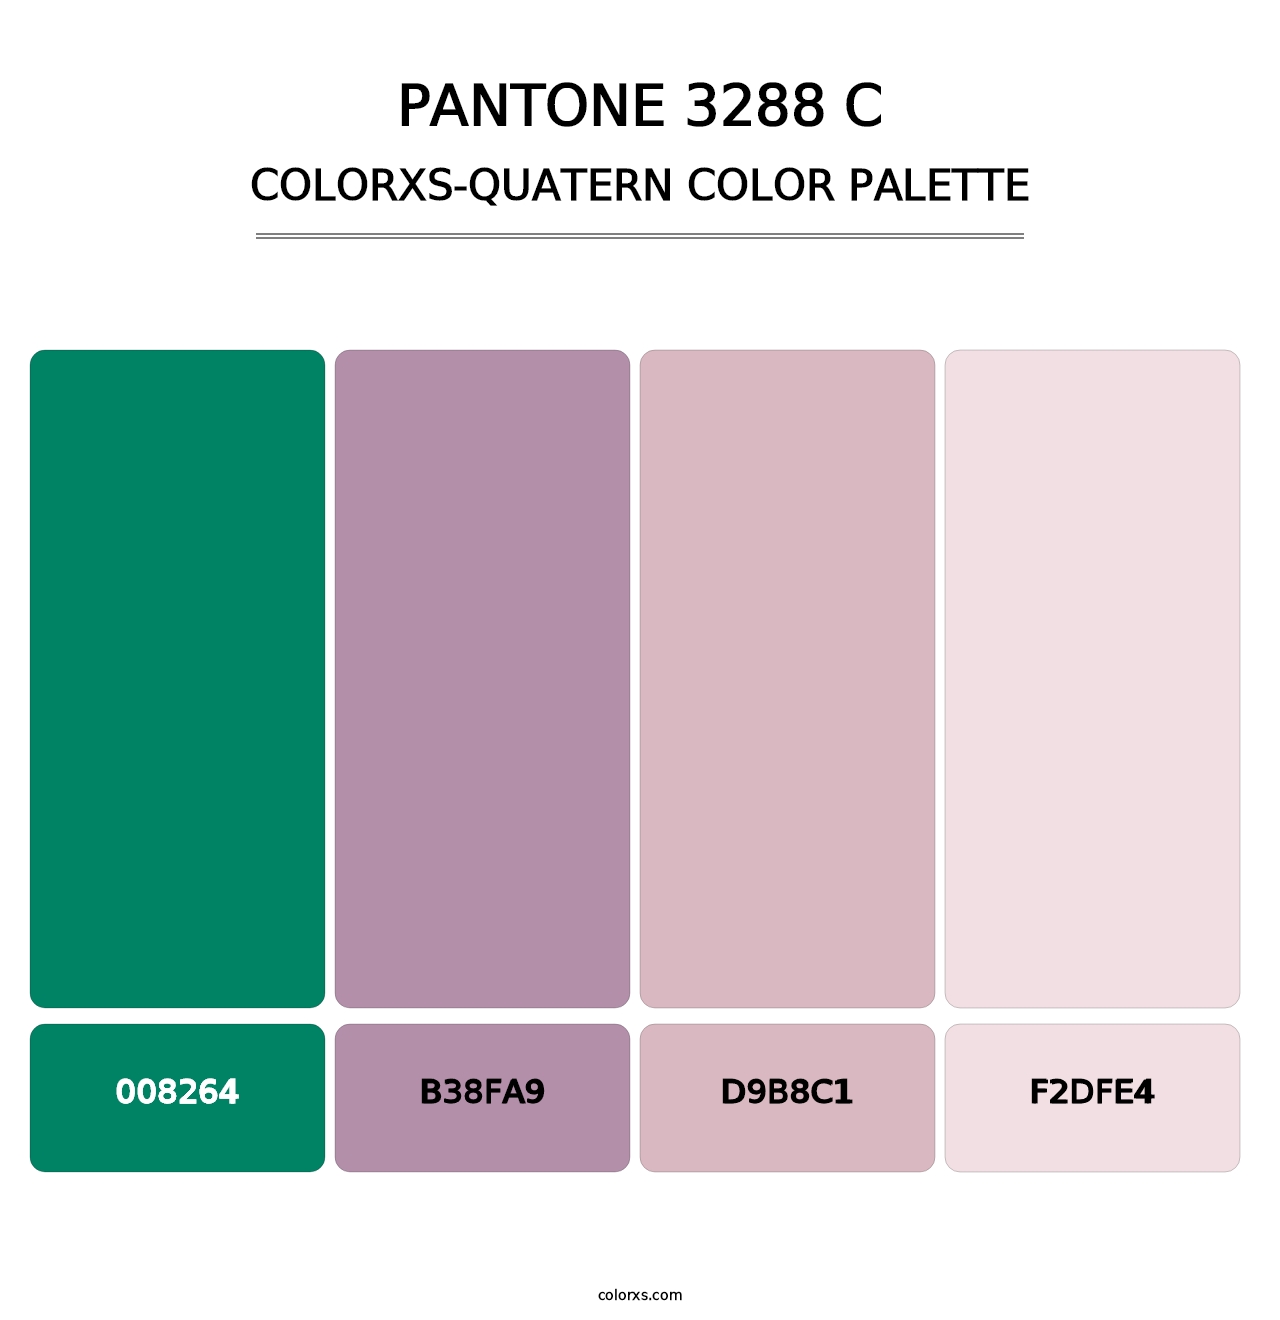 PANTONE 3288 C - Colorxs Quatern Palette